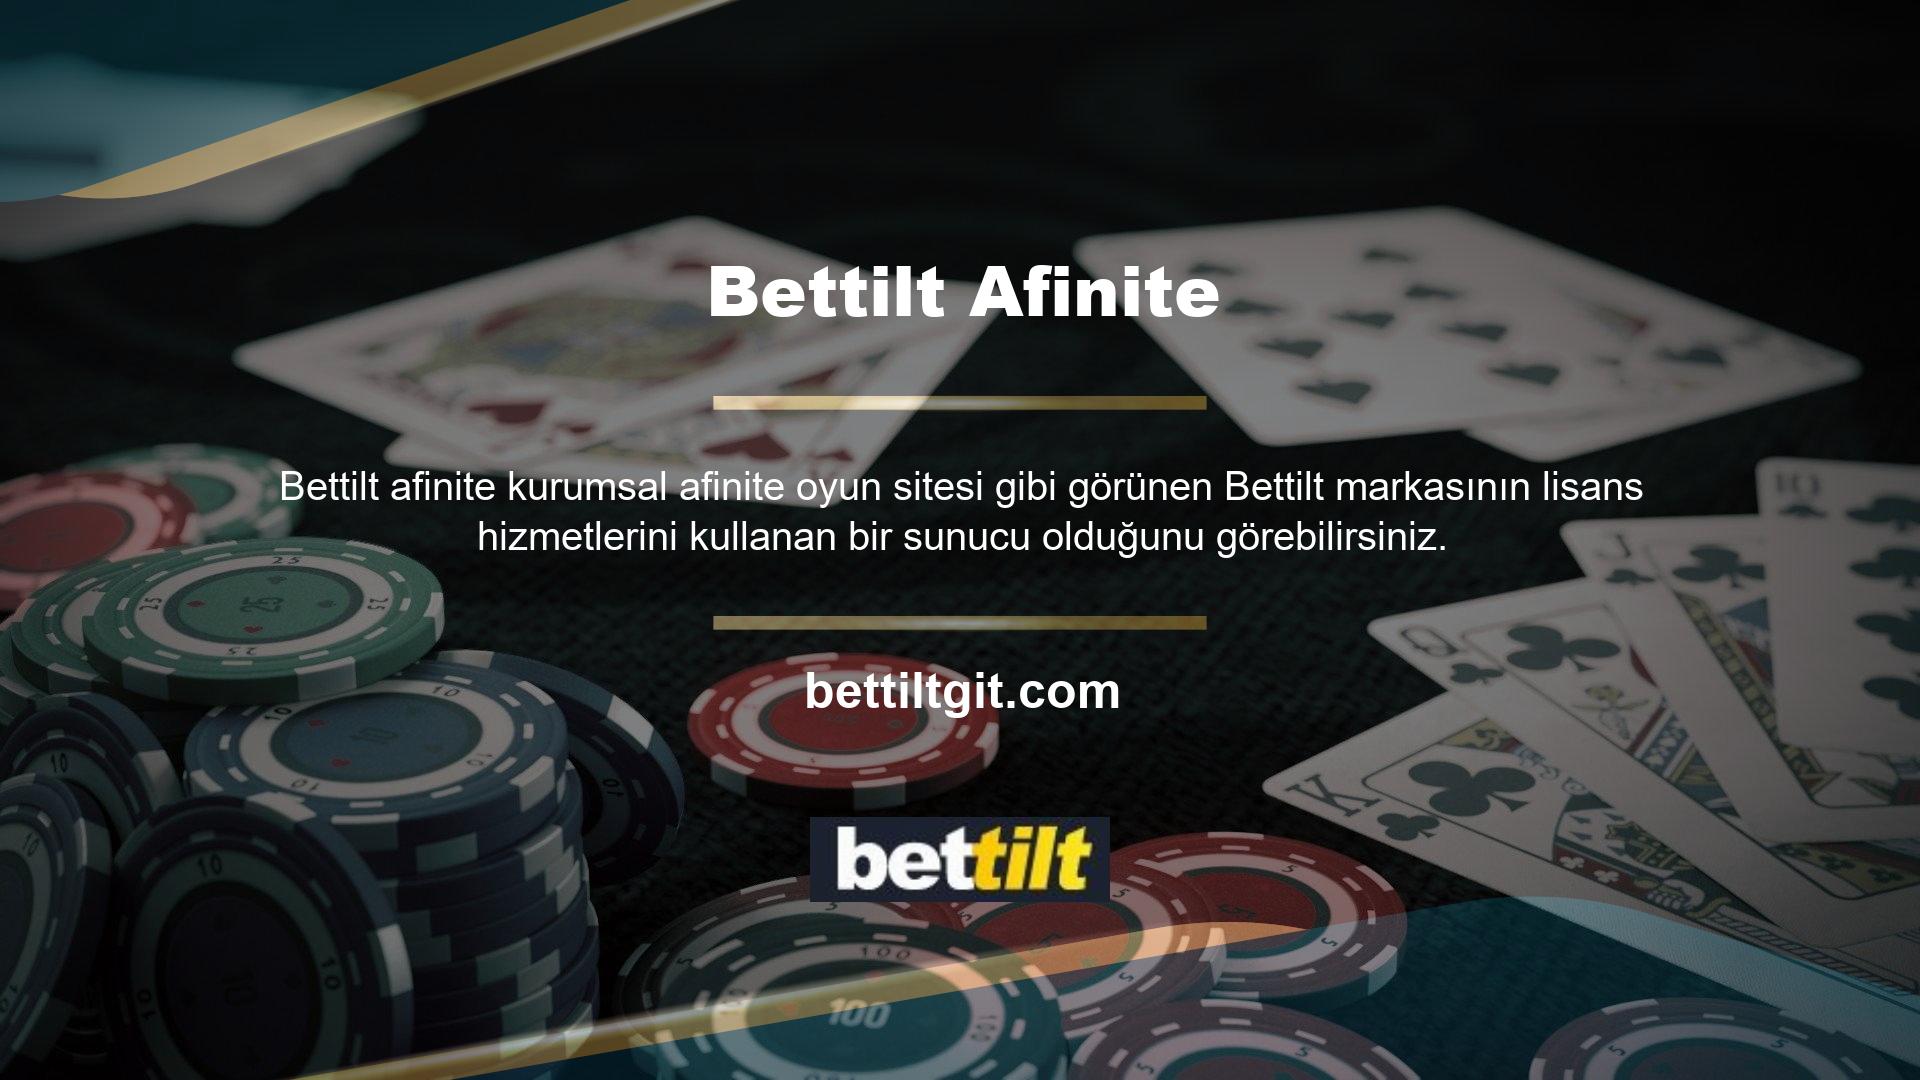 Bu işlemin Bettilt yeni erişim adresi üzerinden gerçekleştirildiği ve Türkiye pazarına yönelik hizmet sağlama onay belgelerini yansıttığı görülmektedir